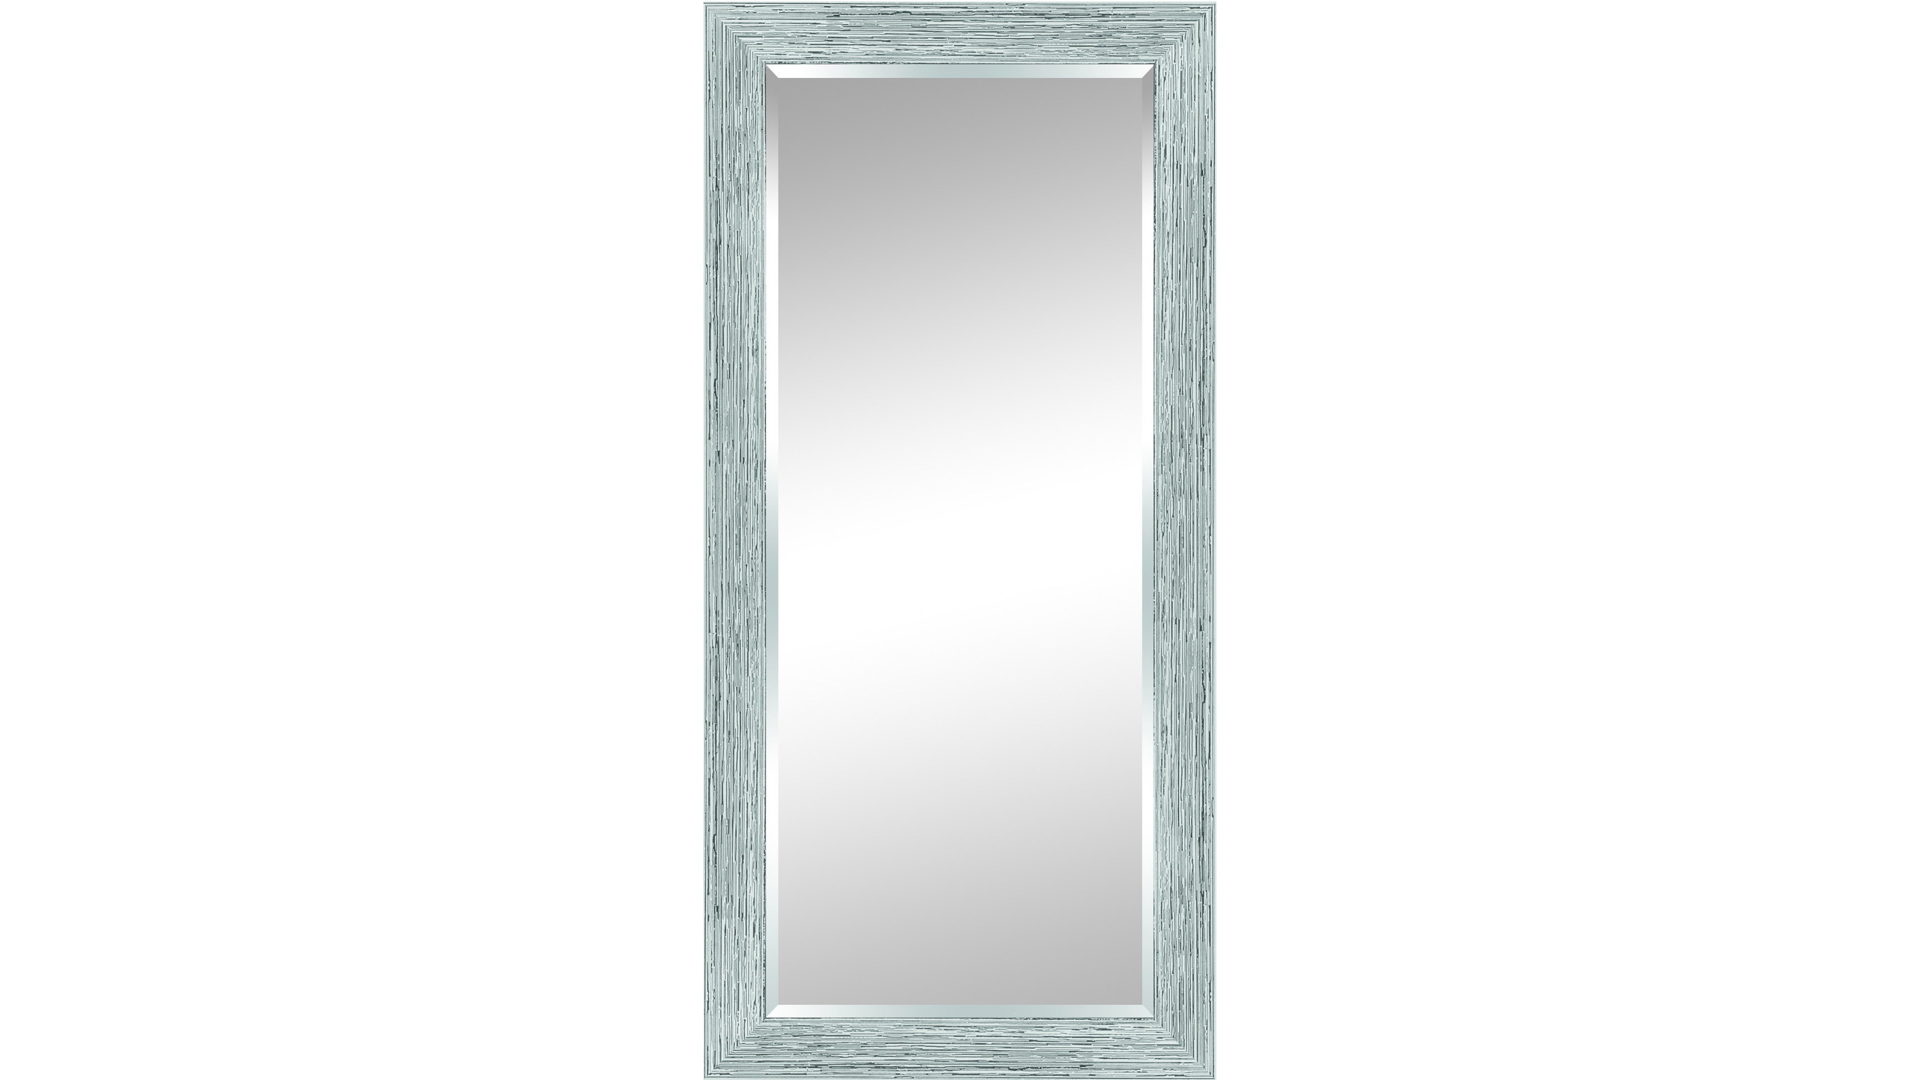 Wandspiegel Len-fra aus Kunststoff in Silber Weiß LEN-FRA Wandspiegel bzw. Garderobenspiegel ROUEN 02 weiß & silberfarbener Kunststoffrahmen - ca. 55 x 115 cm